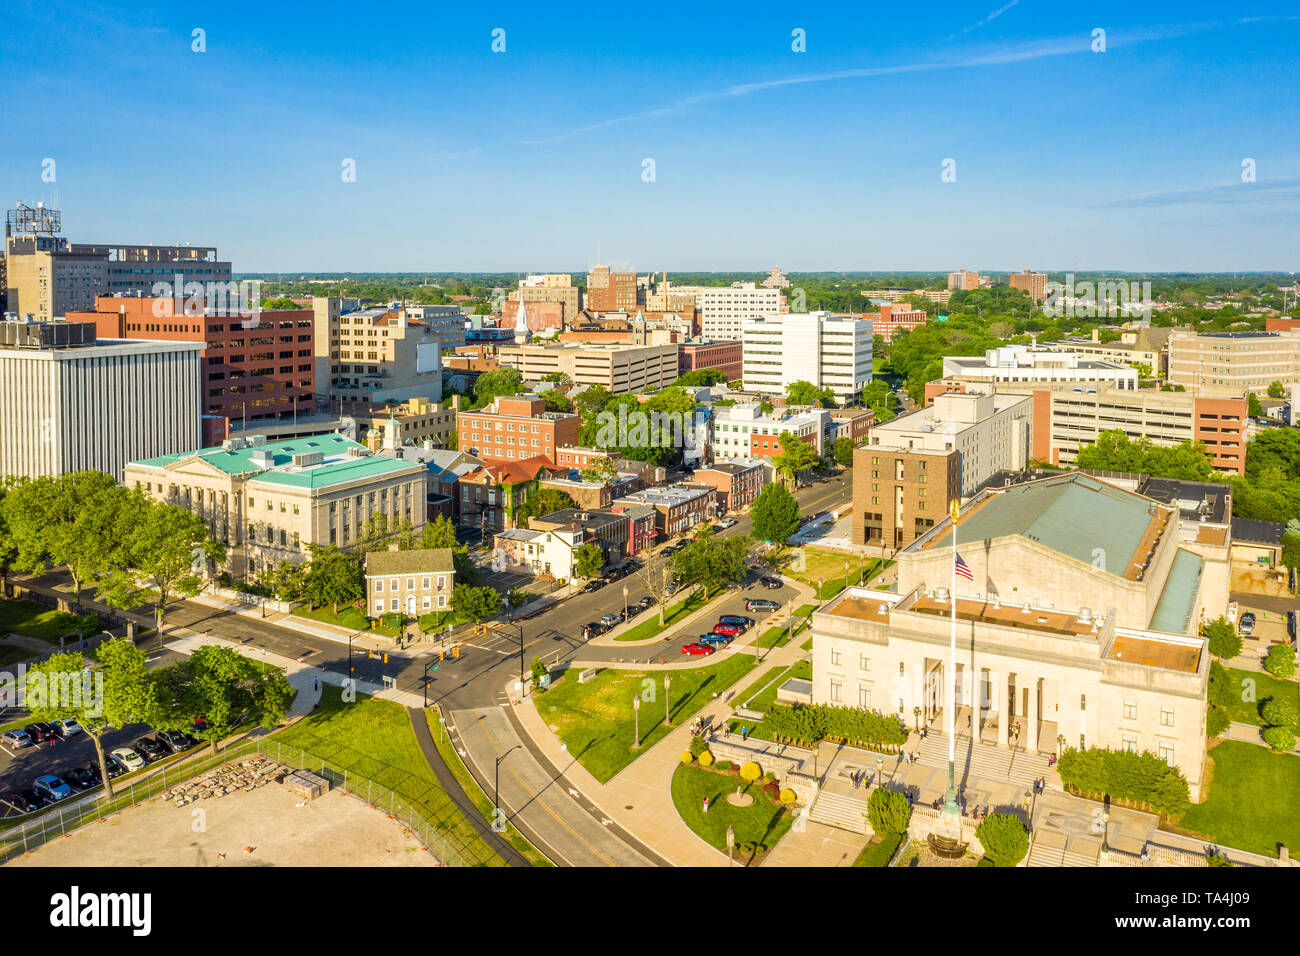 Vue aérienne de la ville de Trenton, New Jersey Banque D'Images